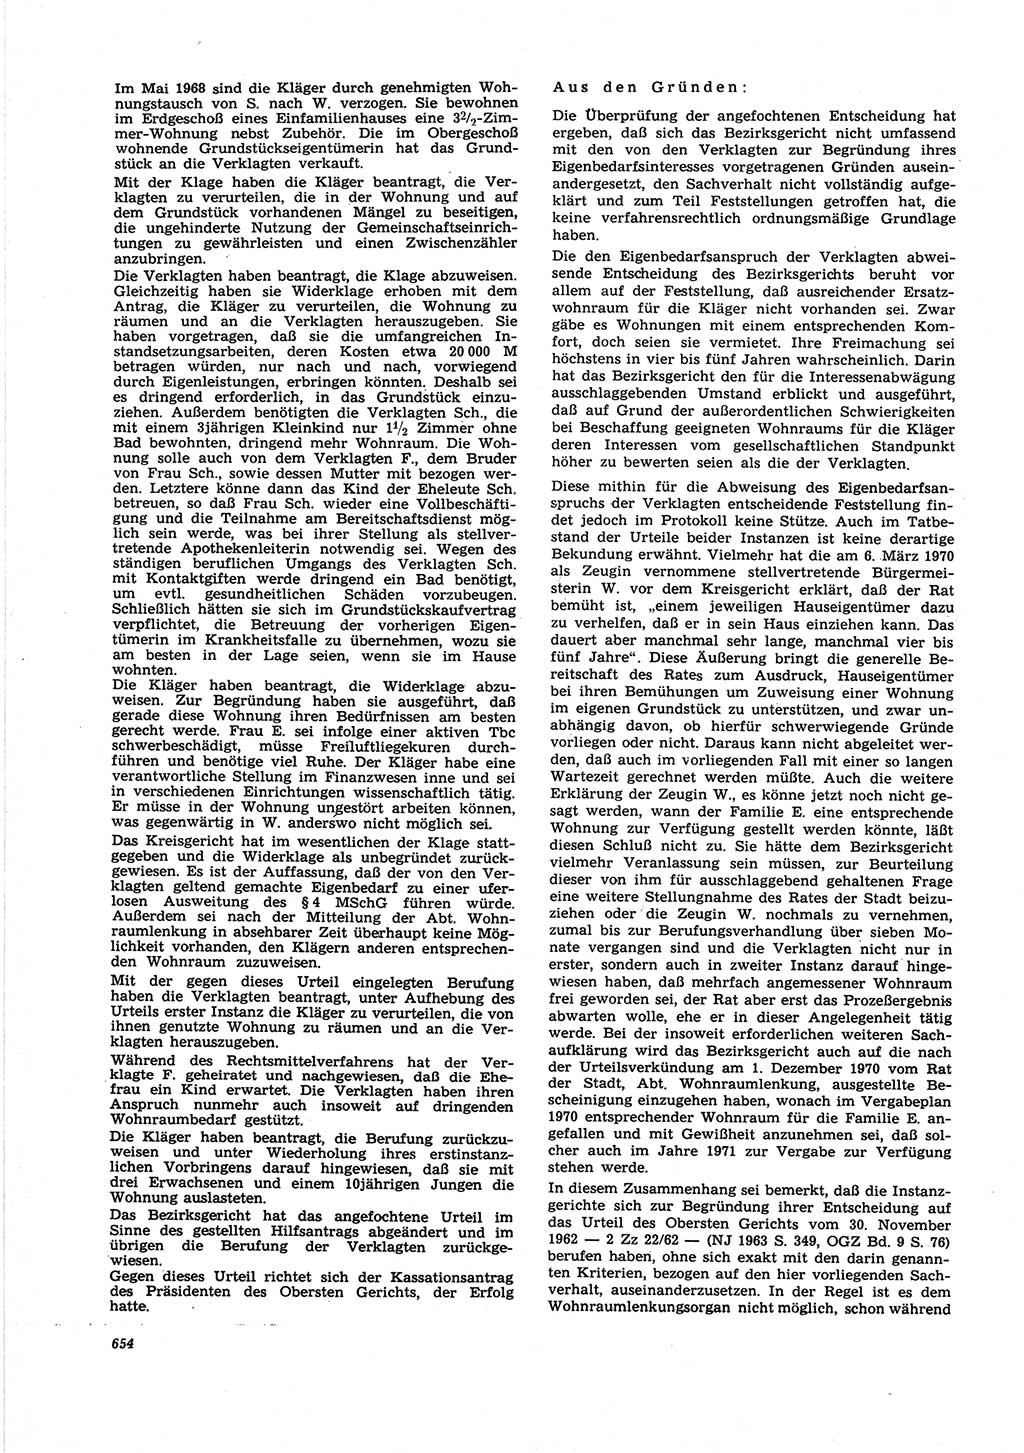 Neue Justiz (NJ), Zeitschrift für Recht und Rechtswissenschaft [Deutsche Demokratische Republik (DDR)], 25. Jahrgang 1971, Seite 654 (NJ DDR 1971, S. 654)